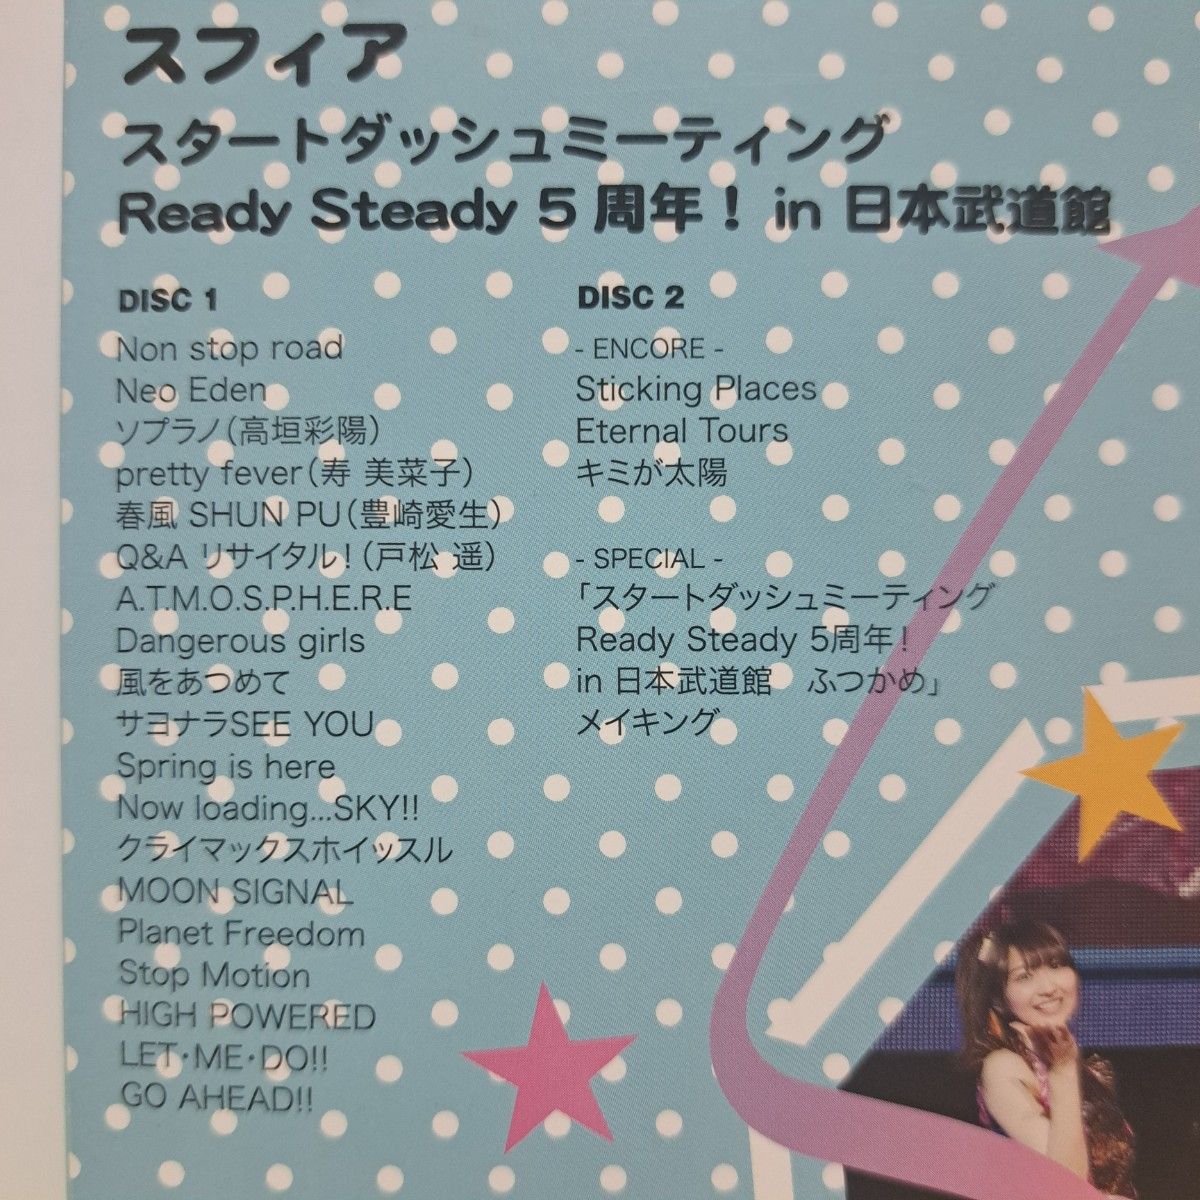 スフィア LIVE2014 BD スタートダッシュミーティング Ready Steady 5周年! in 日本武道館 ふつかめ 